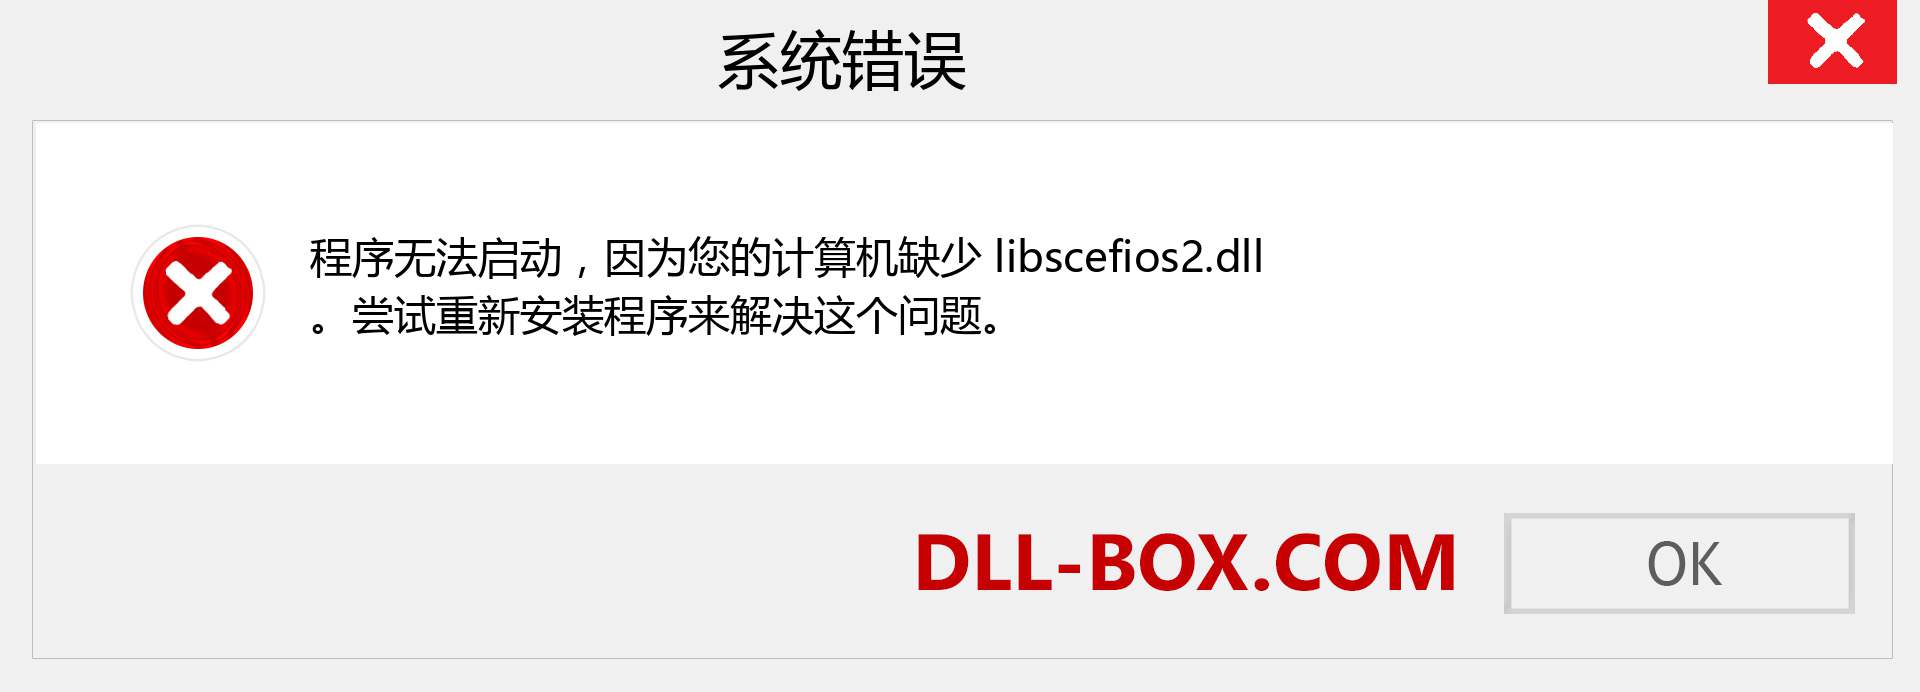 libscefios2.dll 文件丢失？。 适用于 Windows 7、8、10 的下载 - 修复 Windows、照片、图像上的 libscefios2 dll 丢失错误